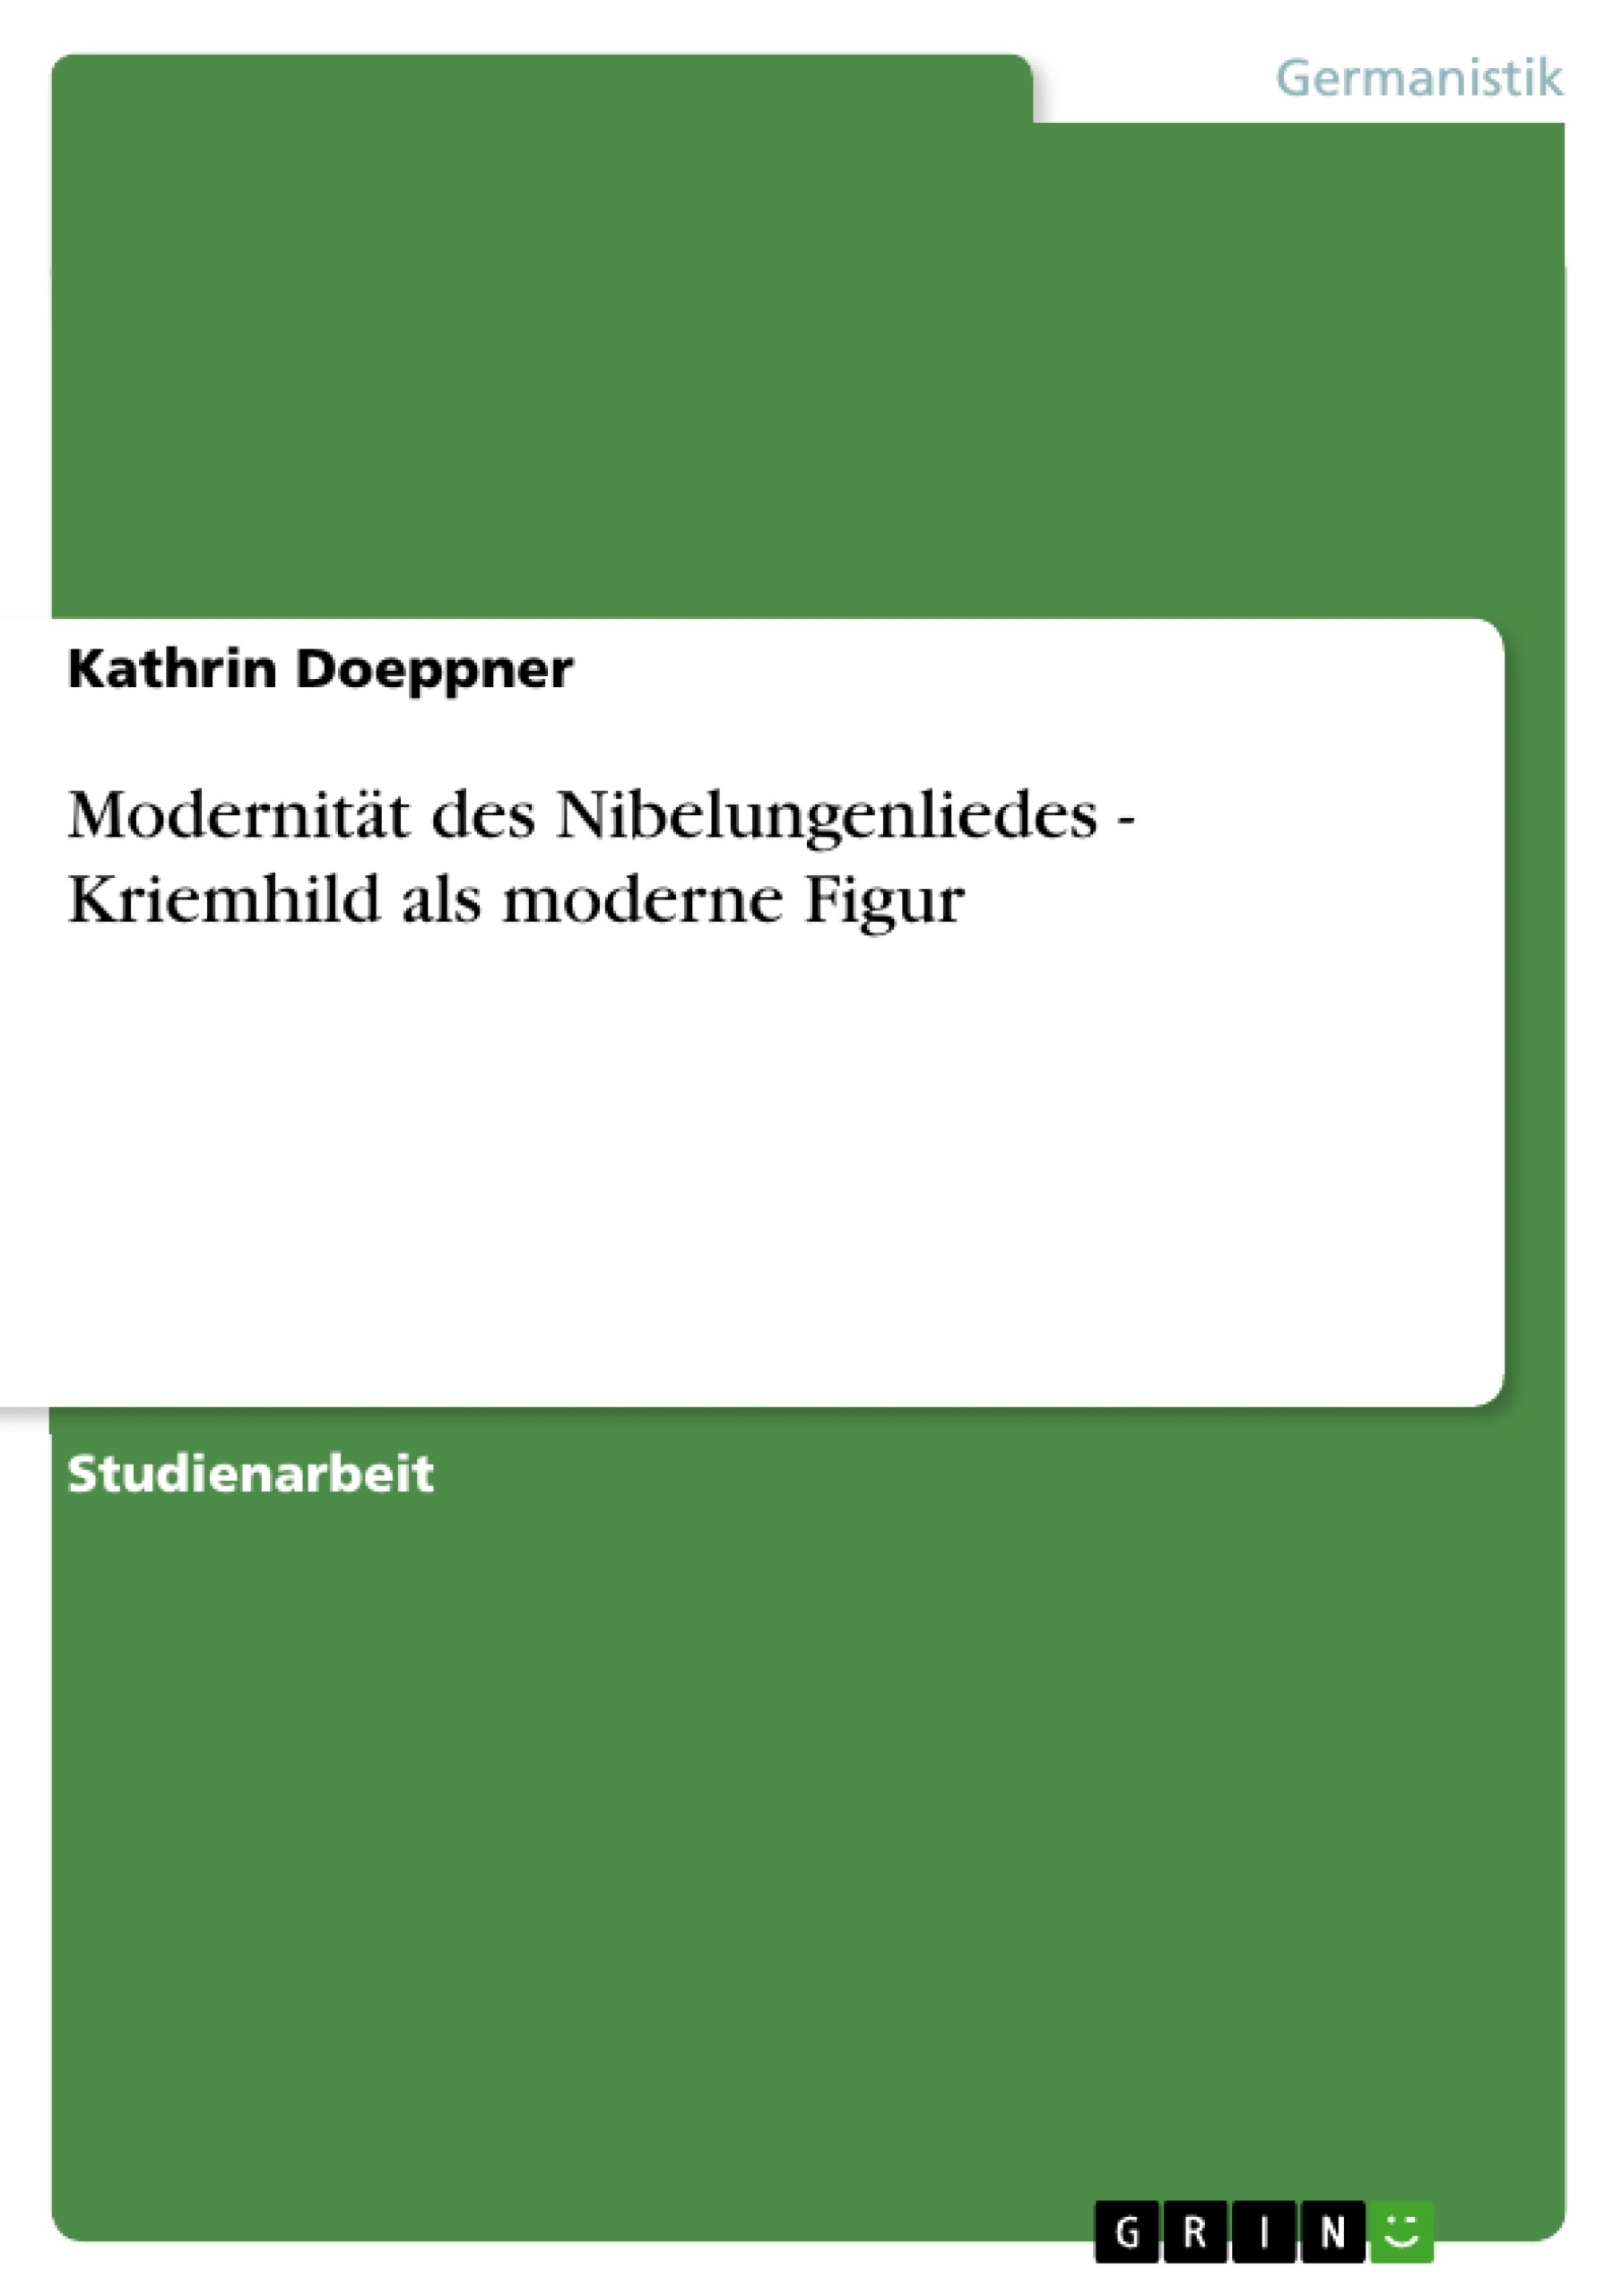 Title: Modernität des Nibelungenliedes - Kriemhild als moderne Figur  